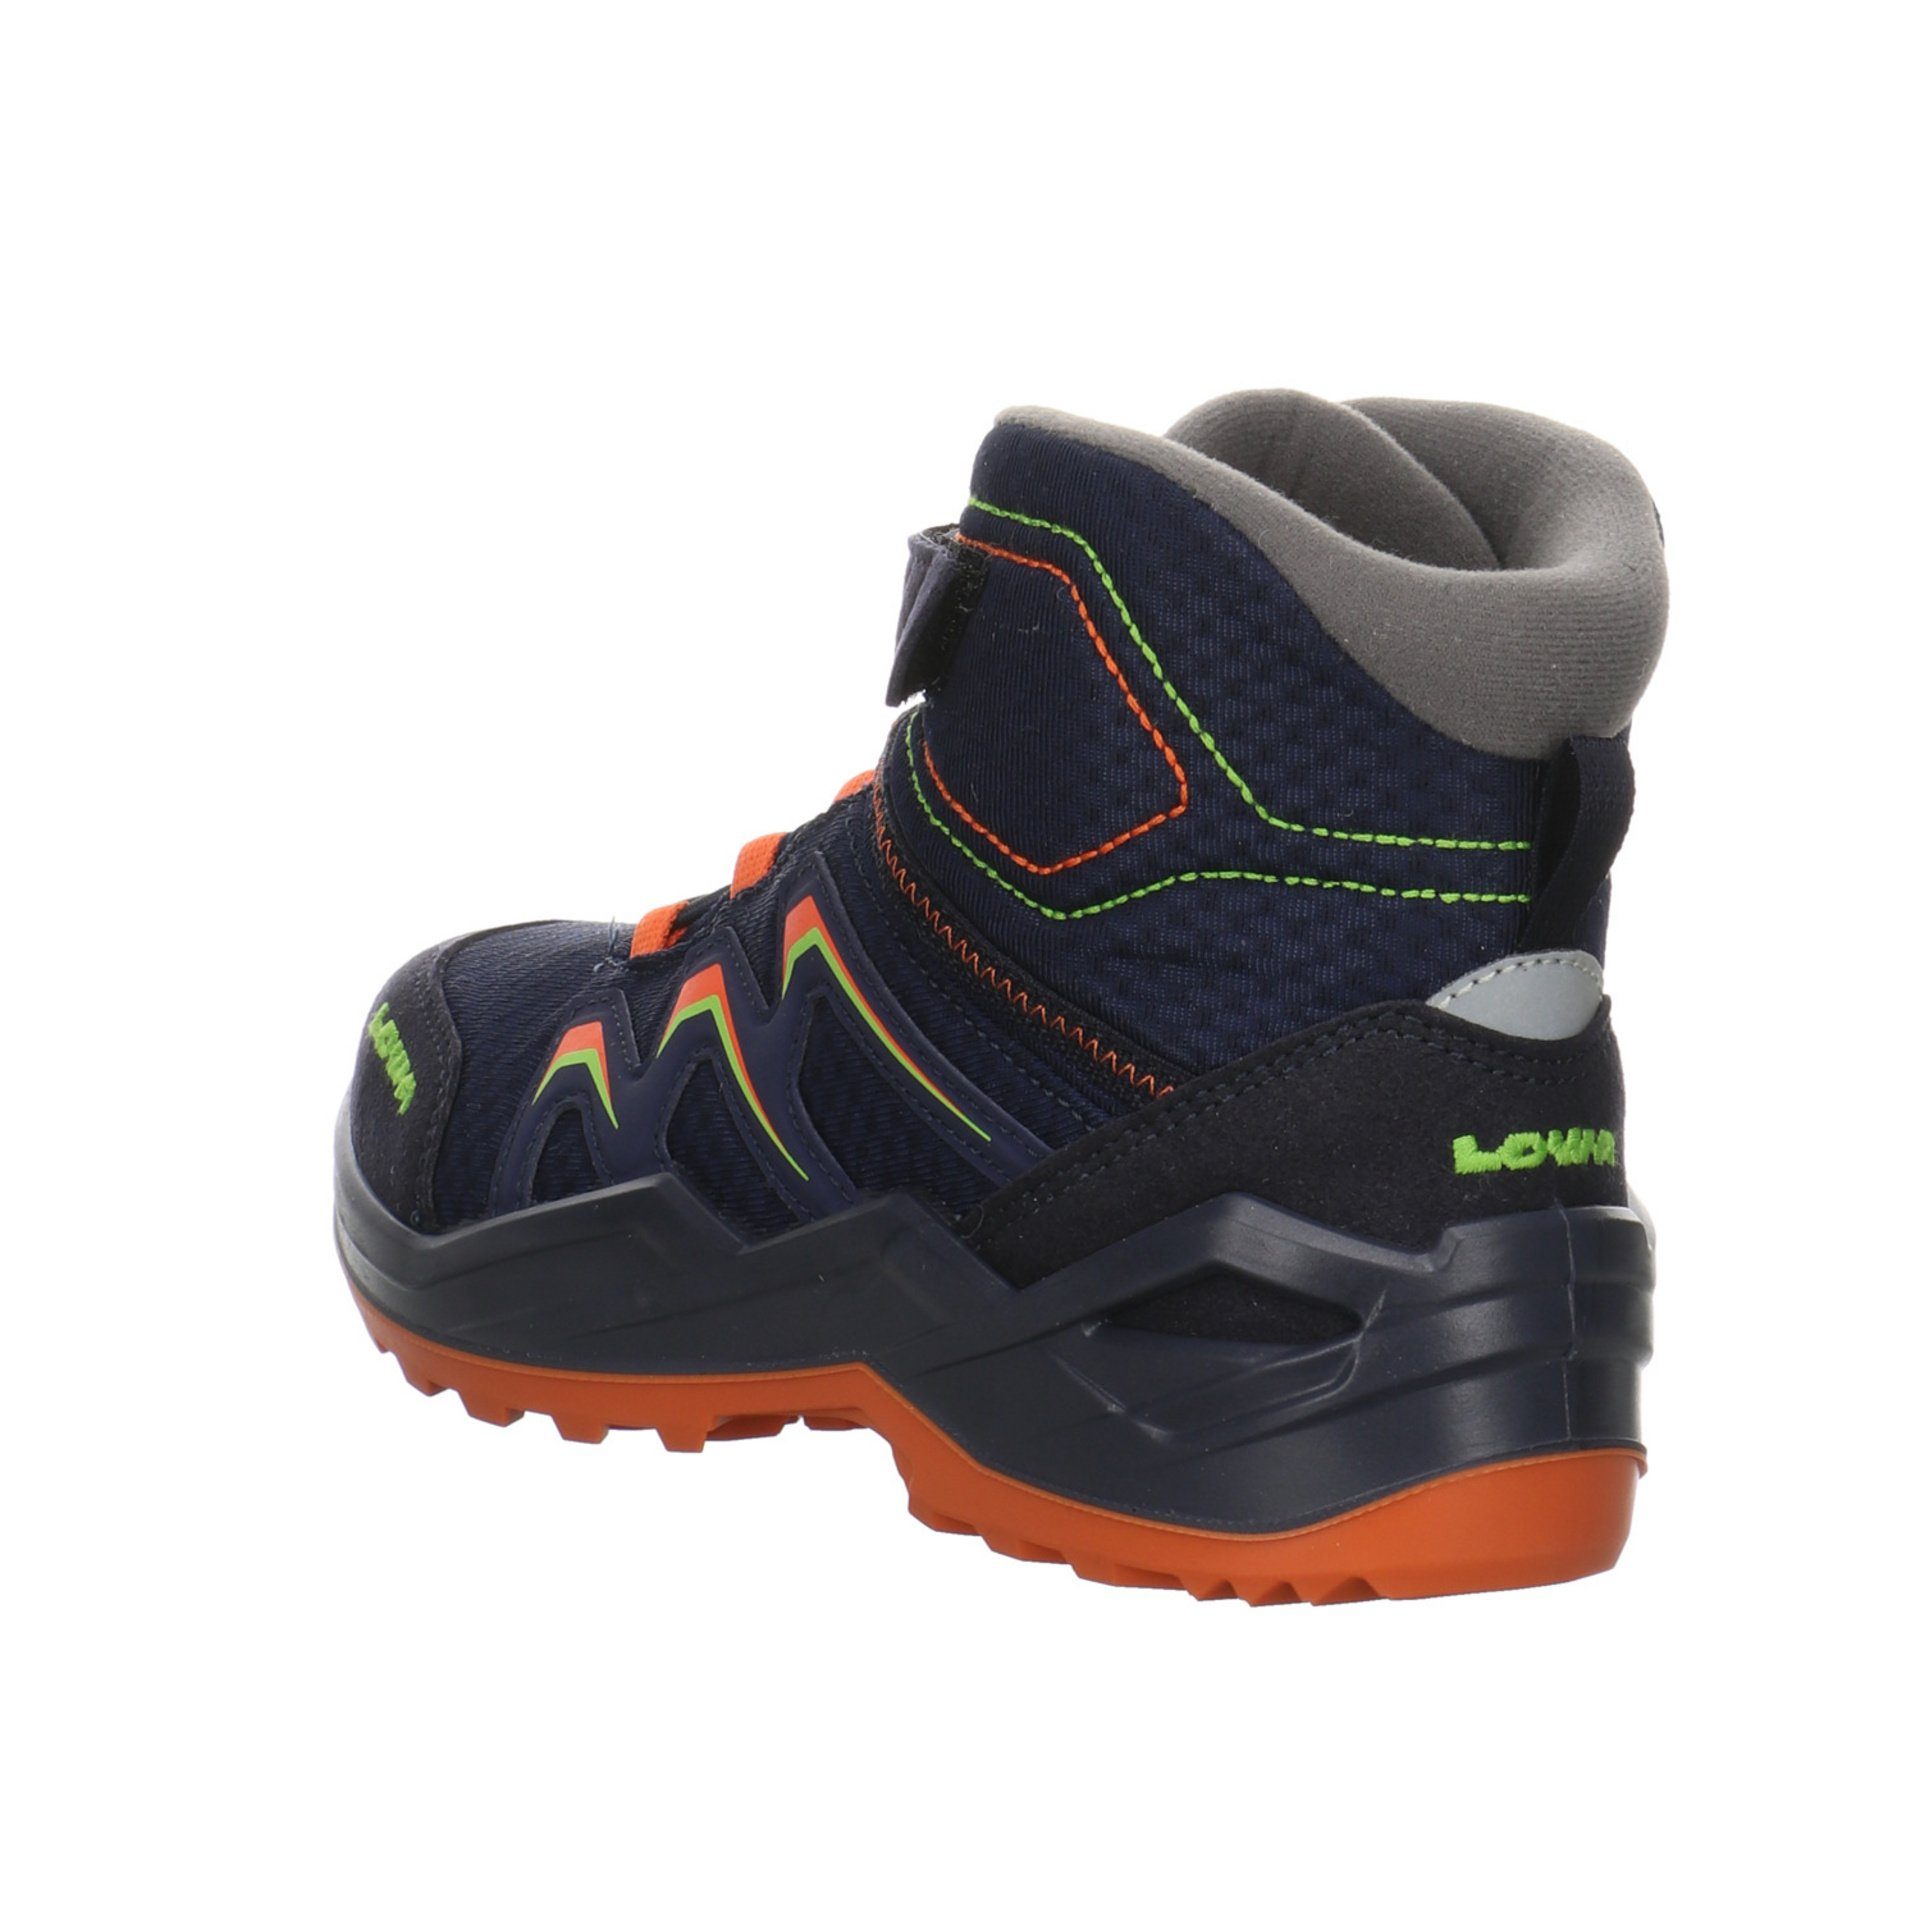 Jungen Textil Stiefel Stiefel Lowa Maddox navy/orange Schuhe GTX Warm Boots